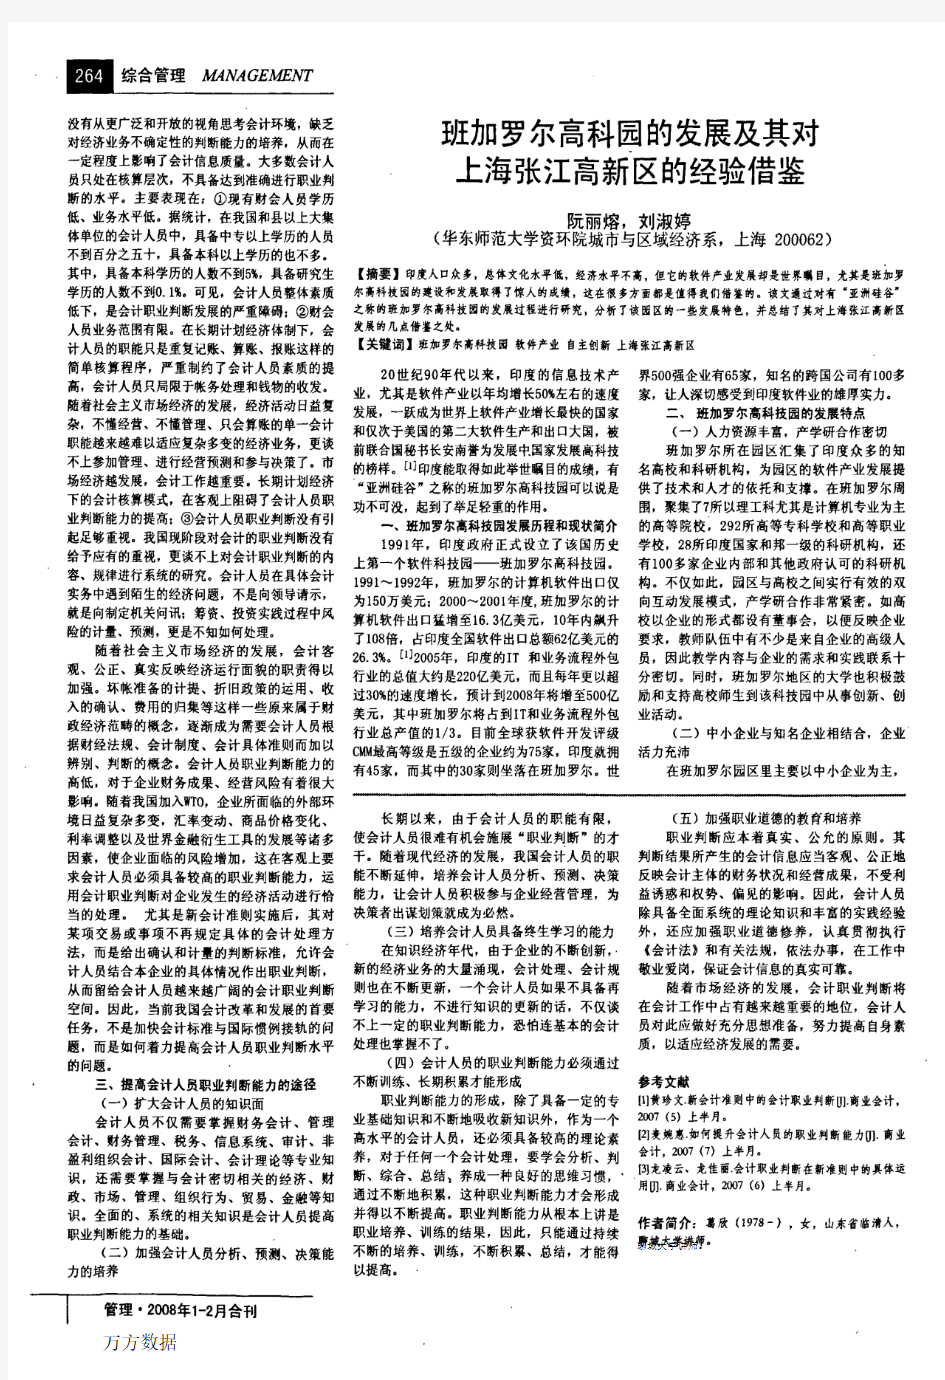 班加罗尔高科园的发展及其对上海张江高新区的经验借鉴